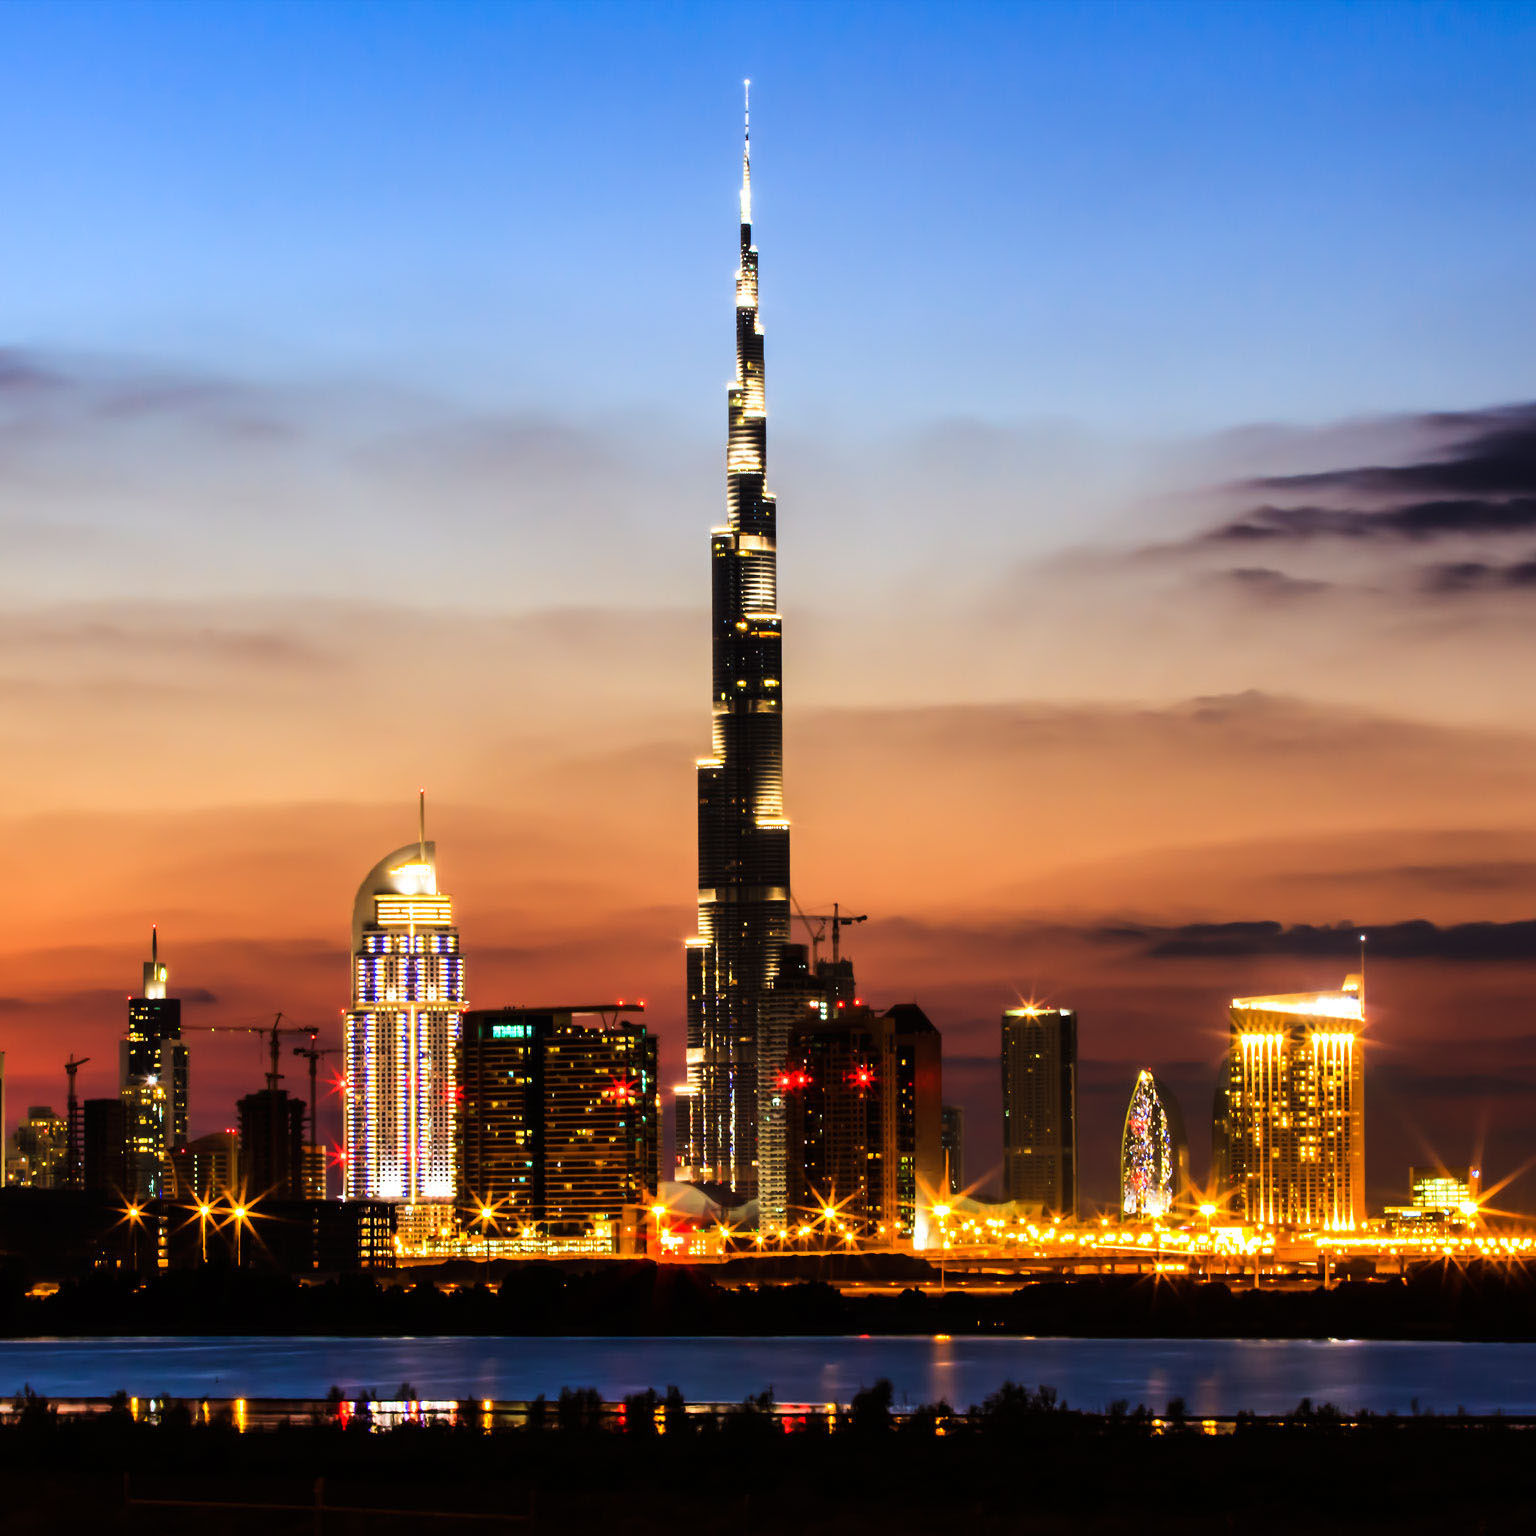 افضل الاماكن السياحية في المدينة التي لاتنام دبي اهم الاماكن السياحية في دبي